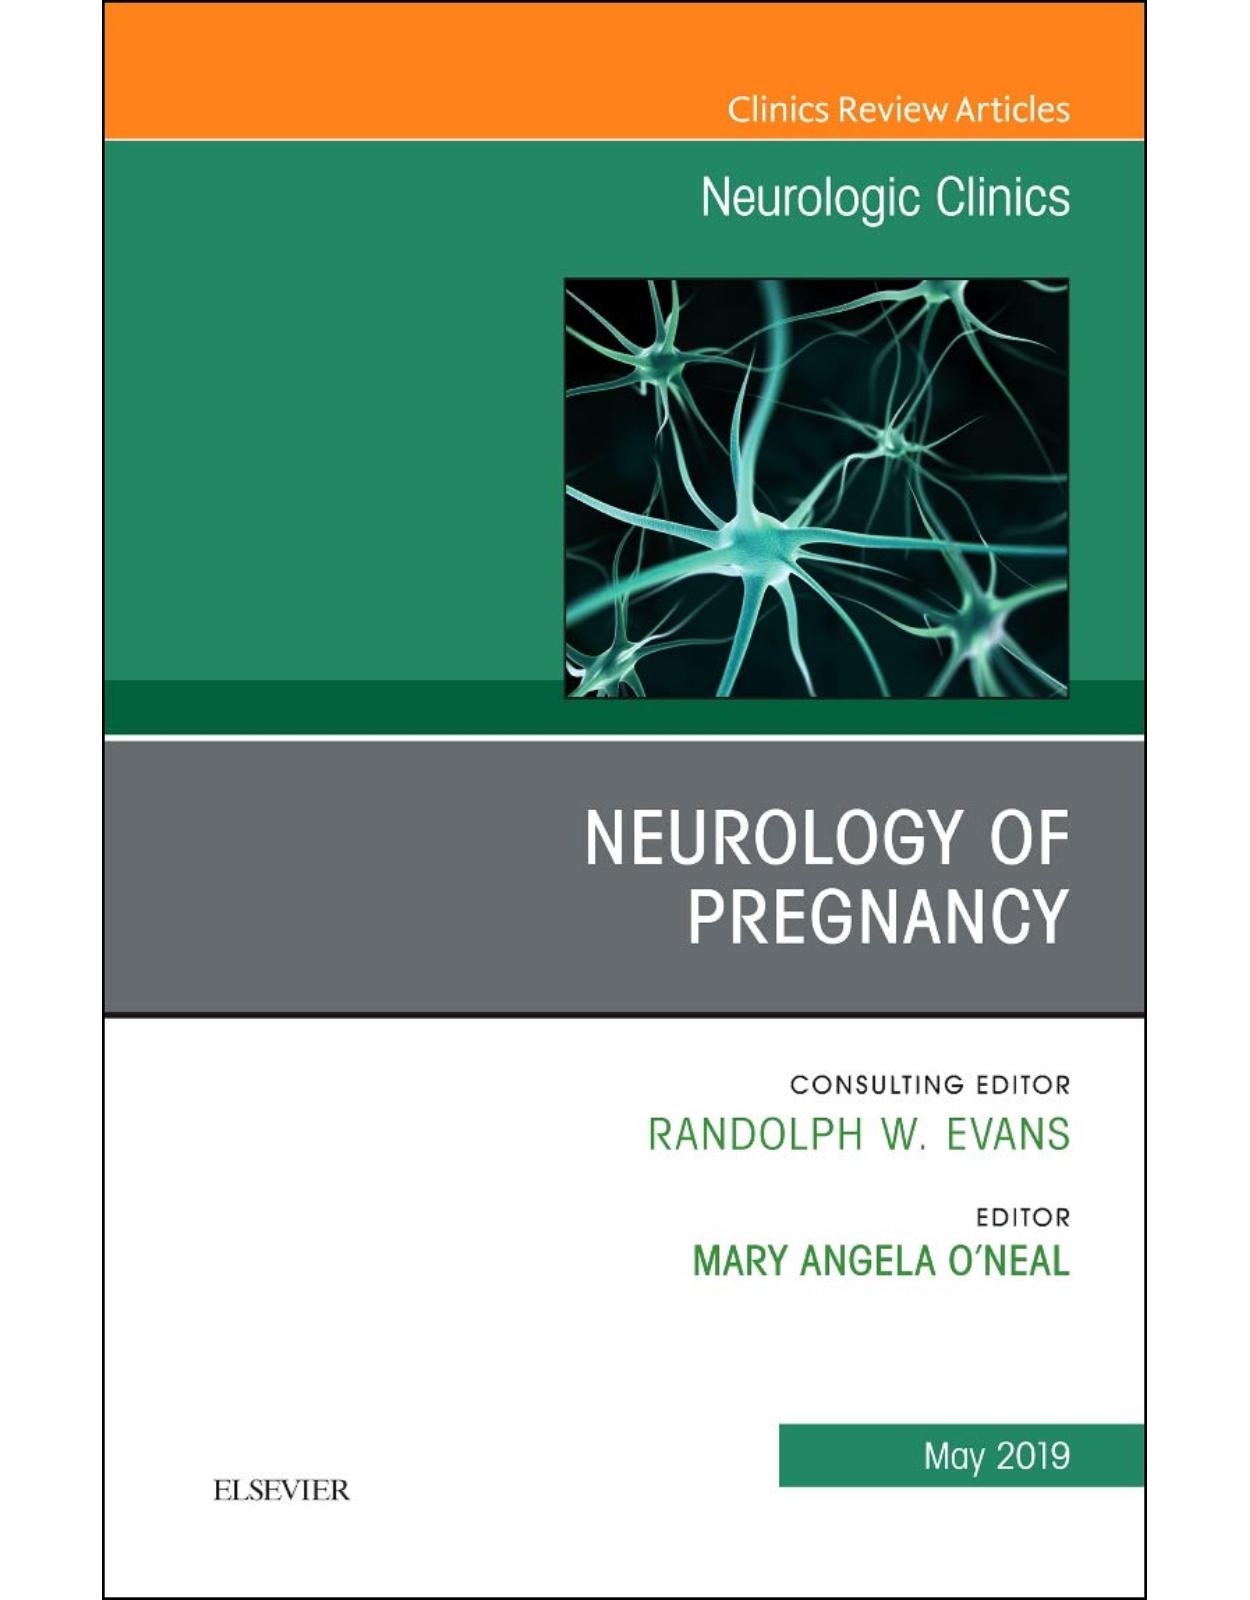 Neurology of Pregnancy, An Issue of Neurologic Clinics, Volume 37-1